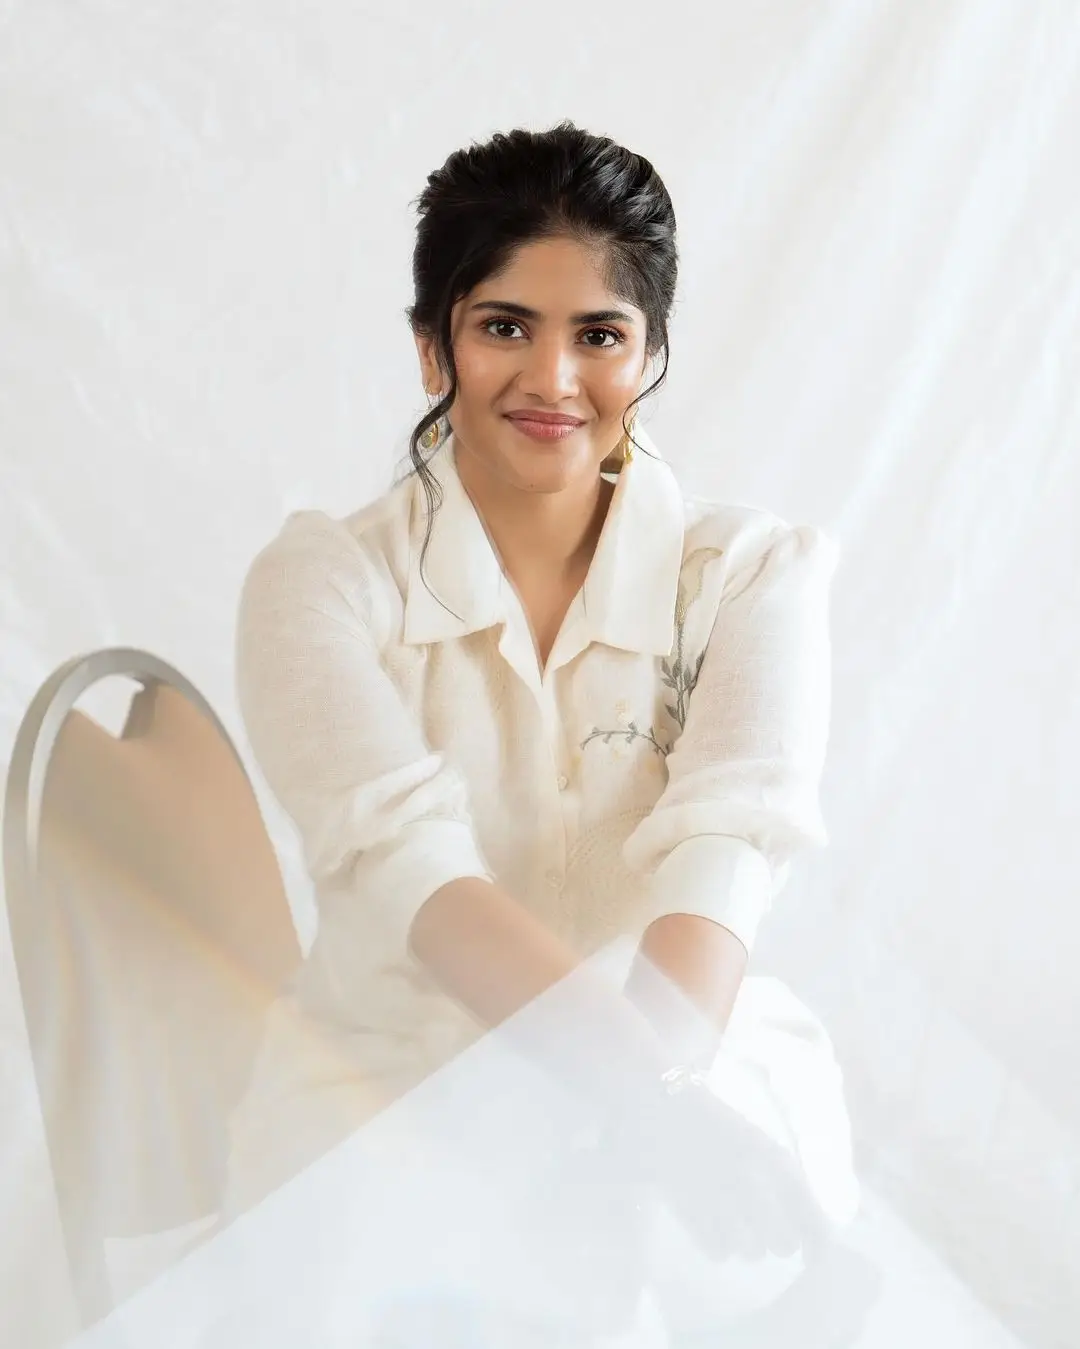 malayalam actress megha akash in white top pant